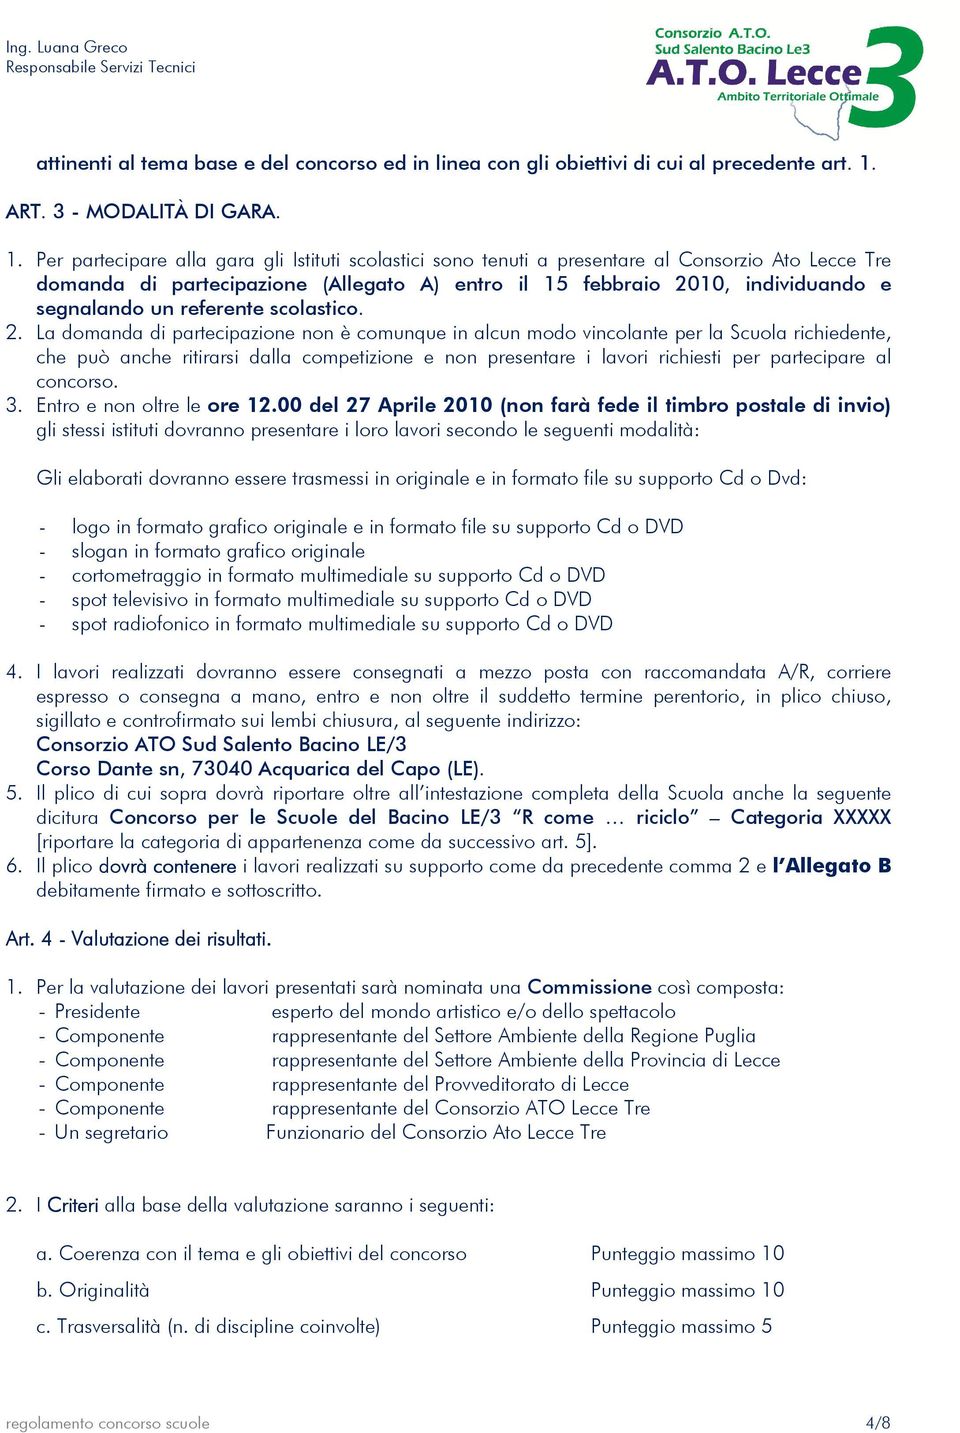 Per partecipare alla gara gli Istituti scolastici sono tenuti a presentare al Consorzio Ato Lecce Tre domanda di partecipazione (Allegato A) entro il 15 febbraio 2010, individuando e segnalando un